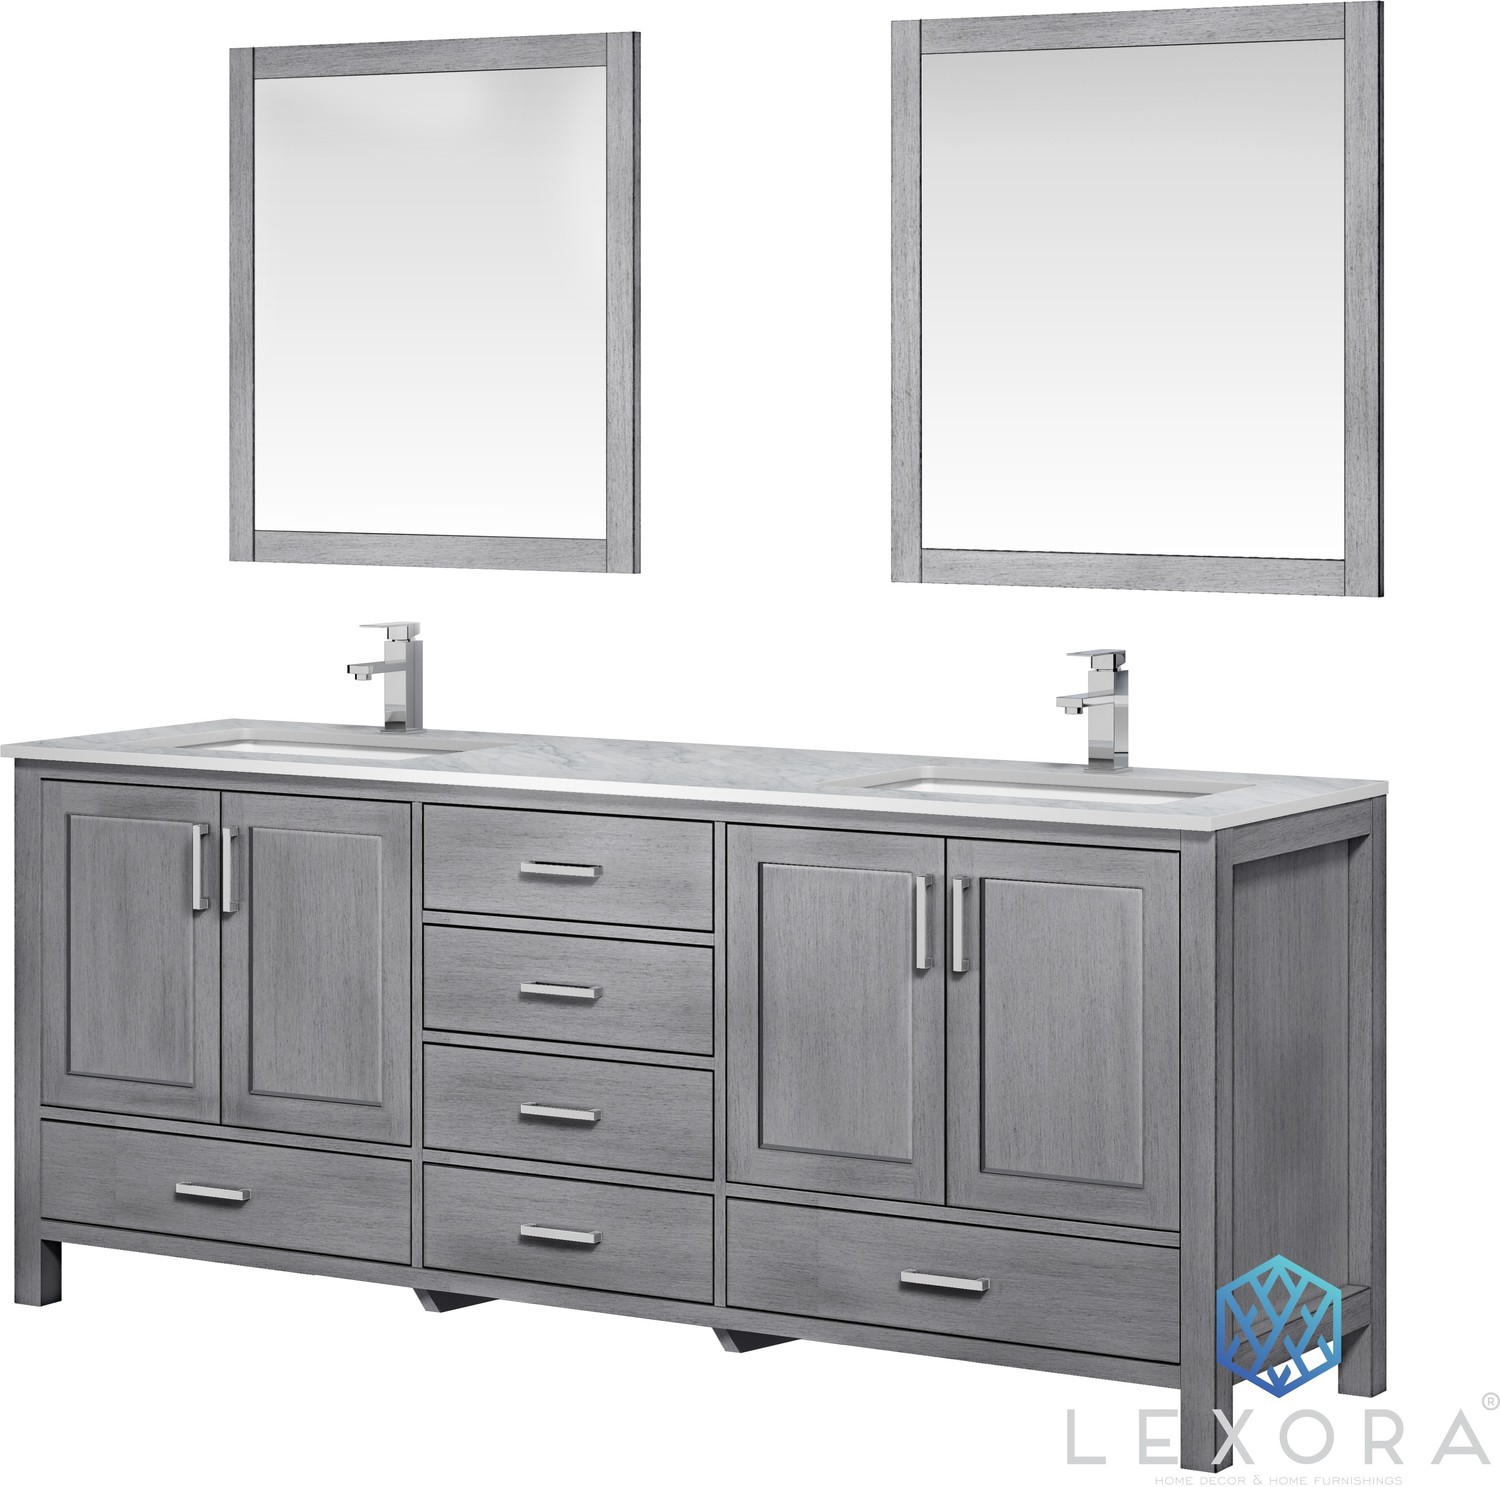 bathroom counter top replacement Lexora Bathroom Vanities Distressed Grey